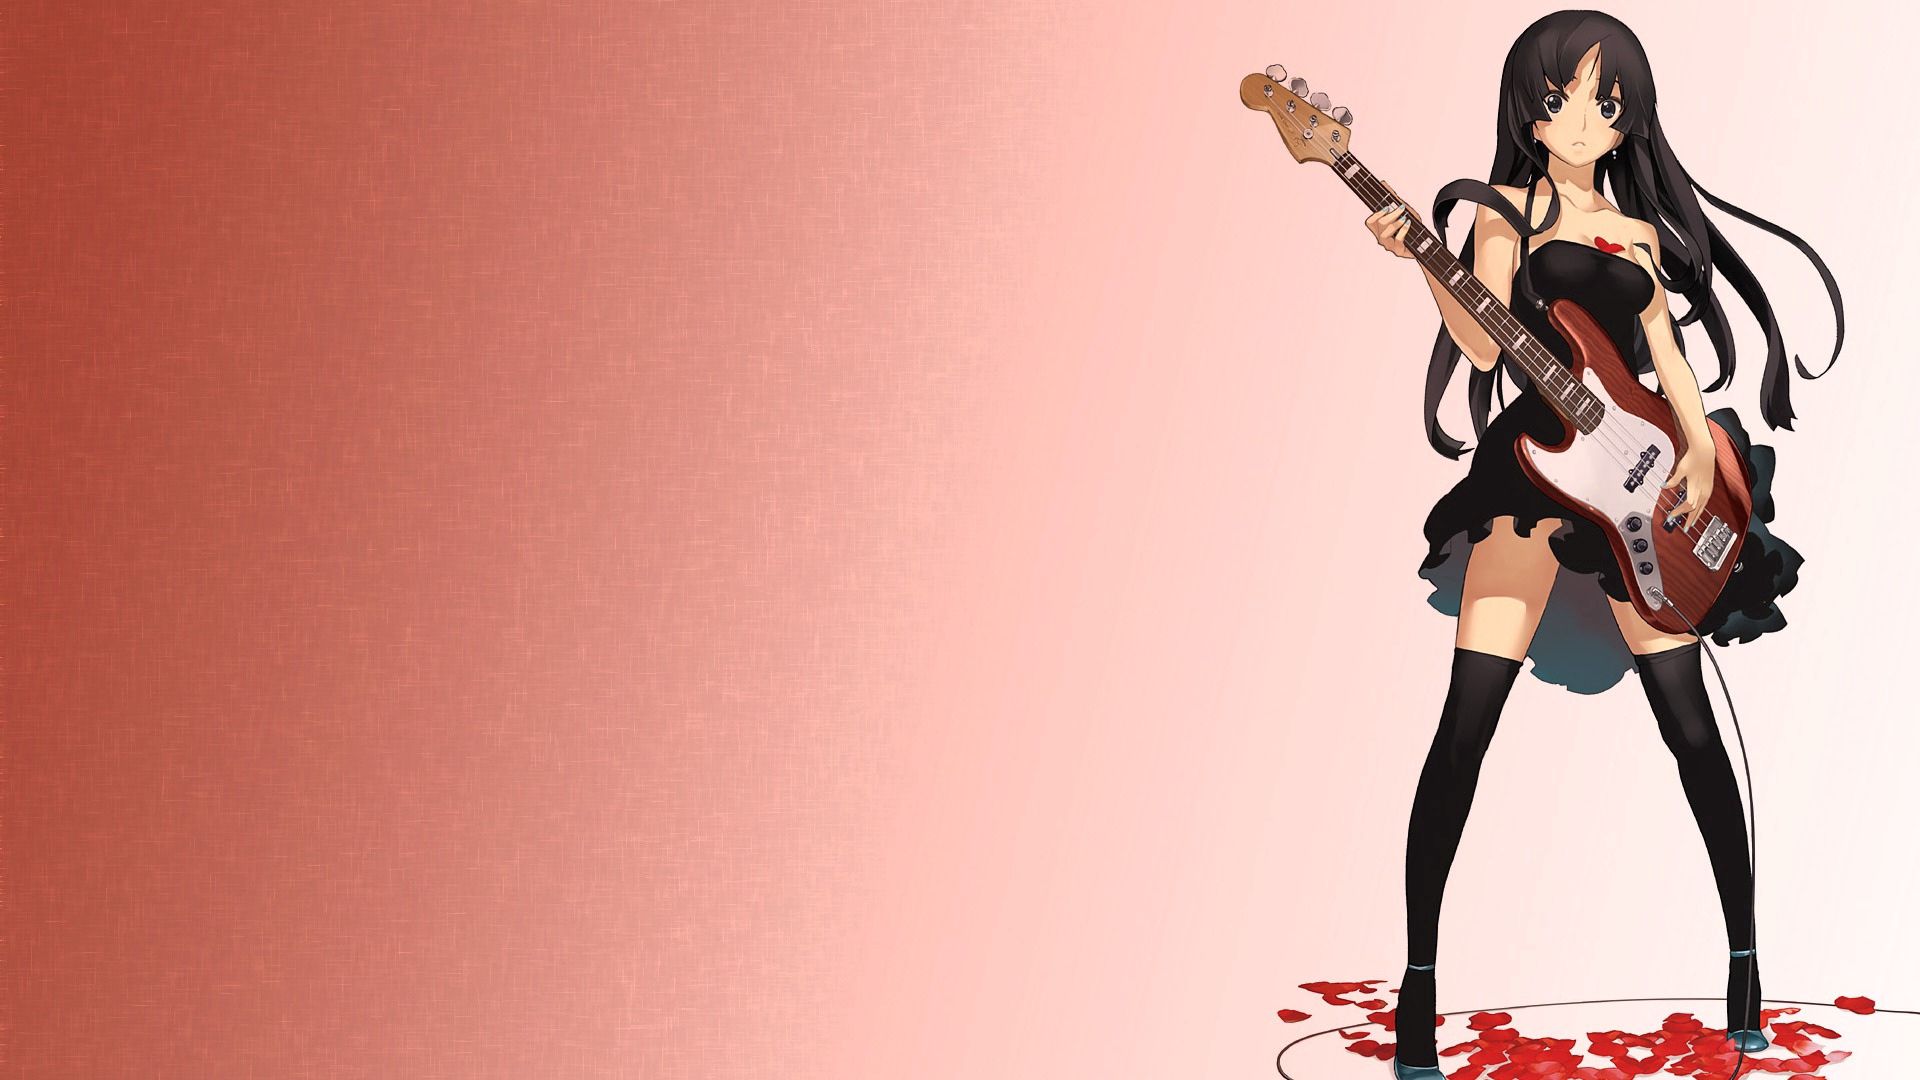 Wallpaper Full HD anime, guitar, rock, girl, musician